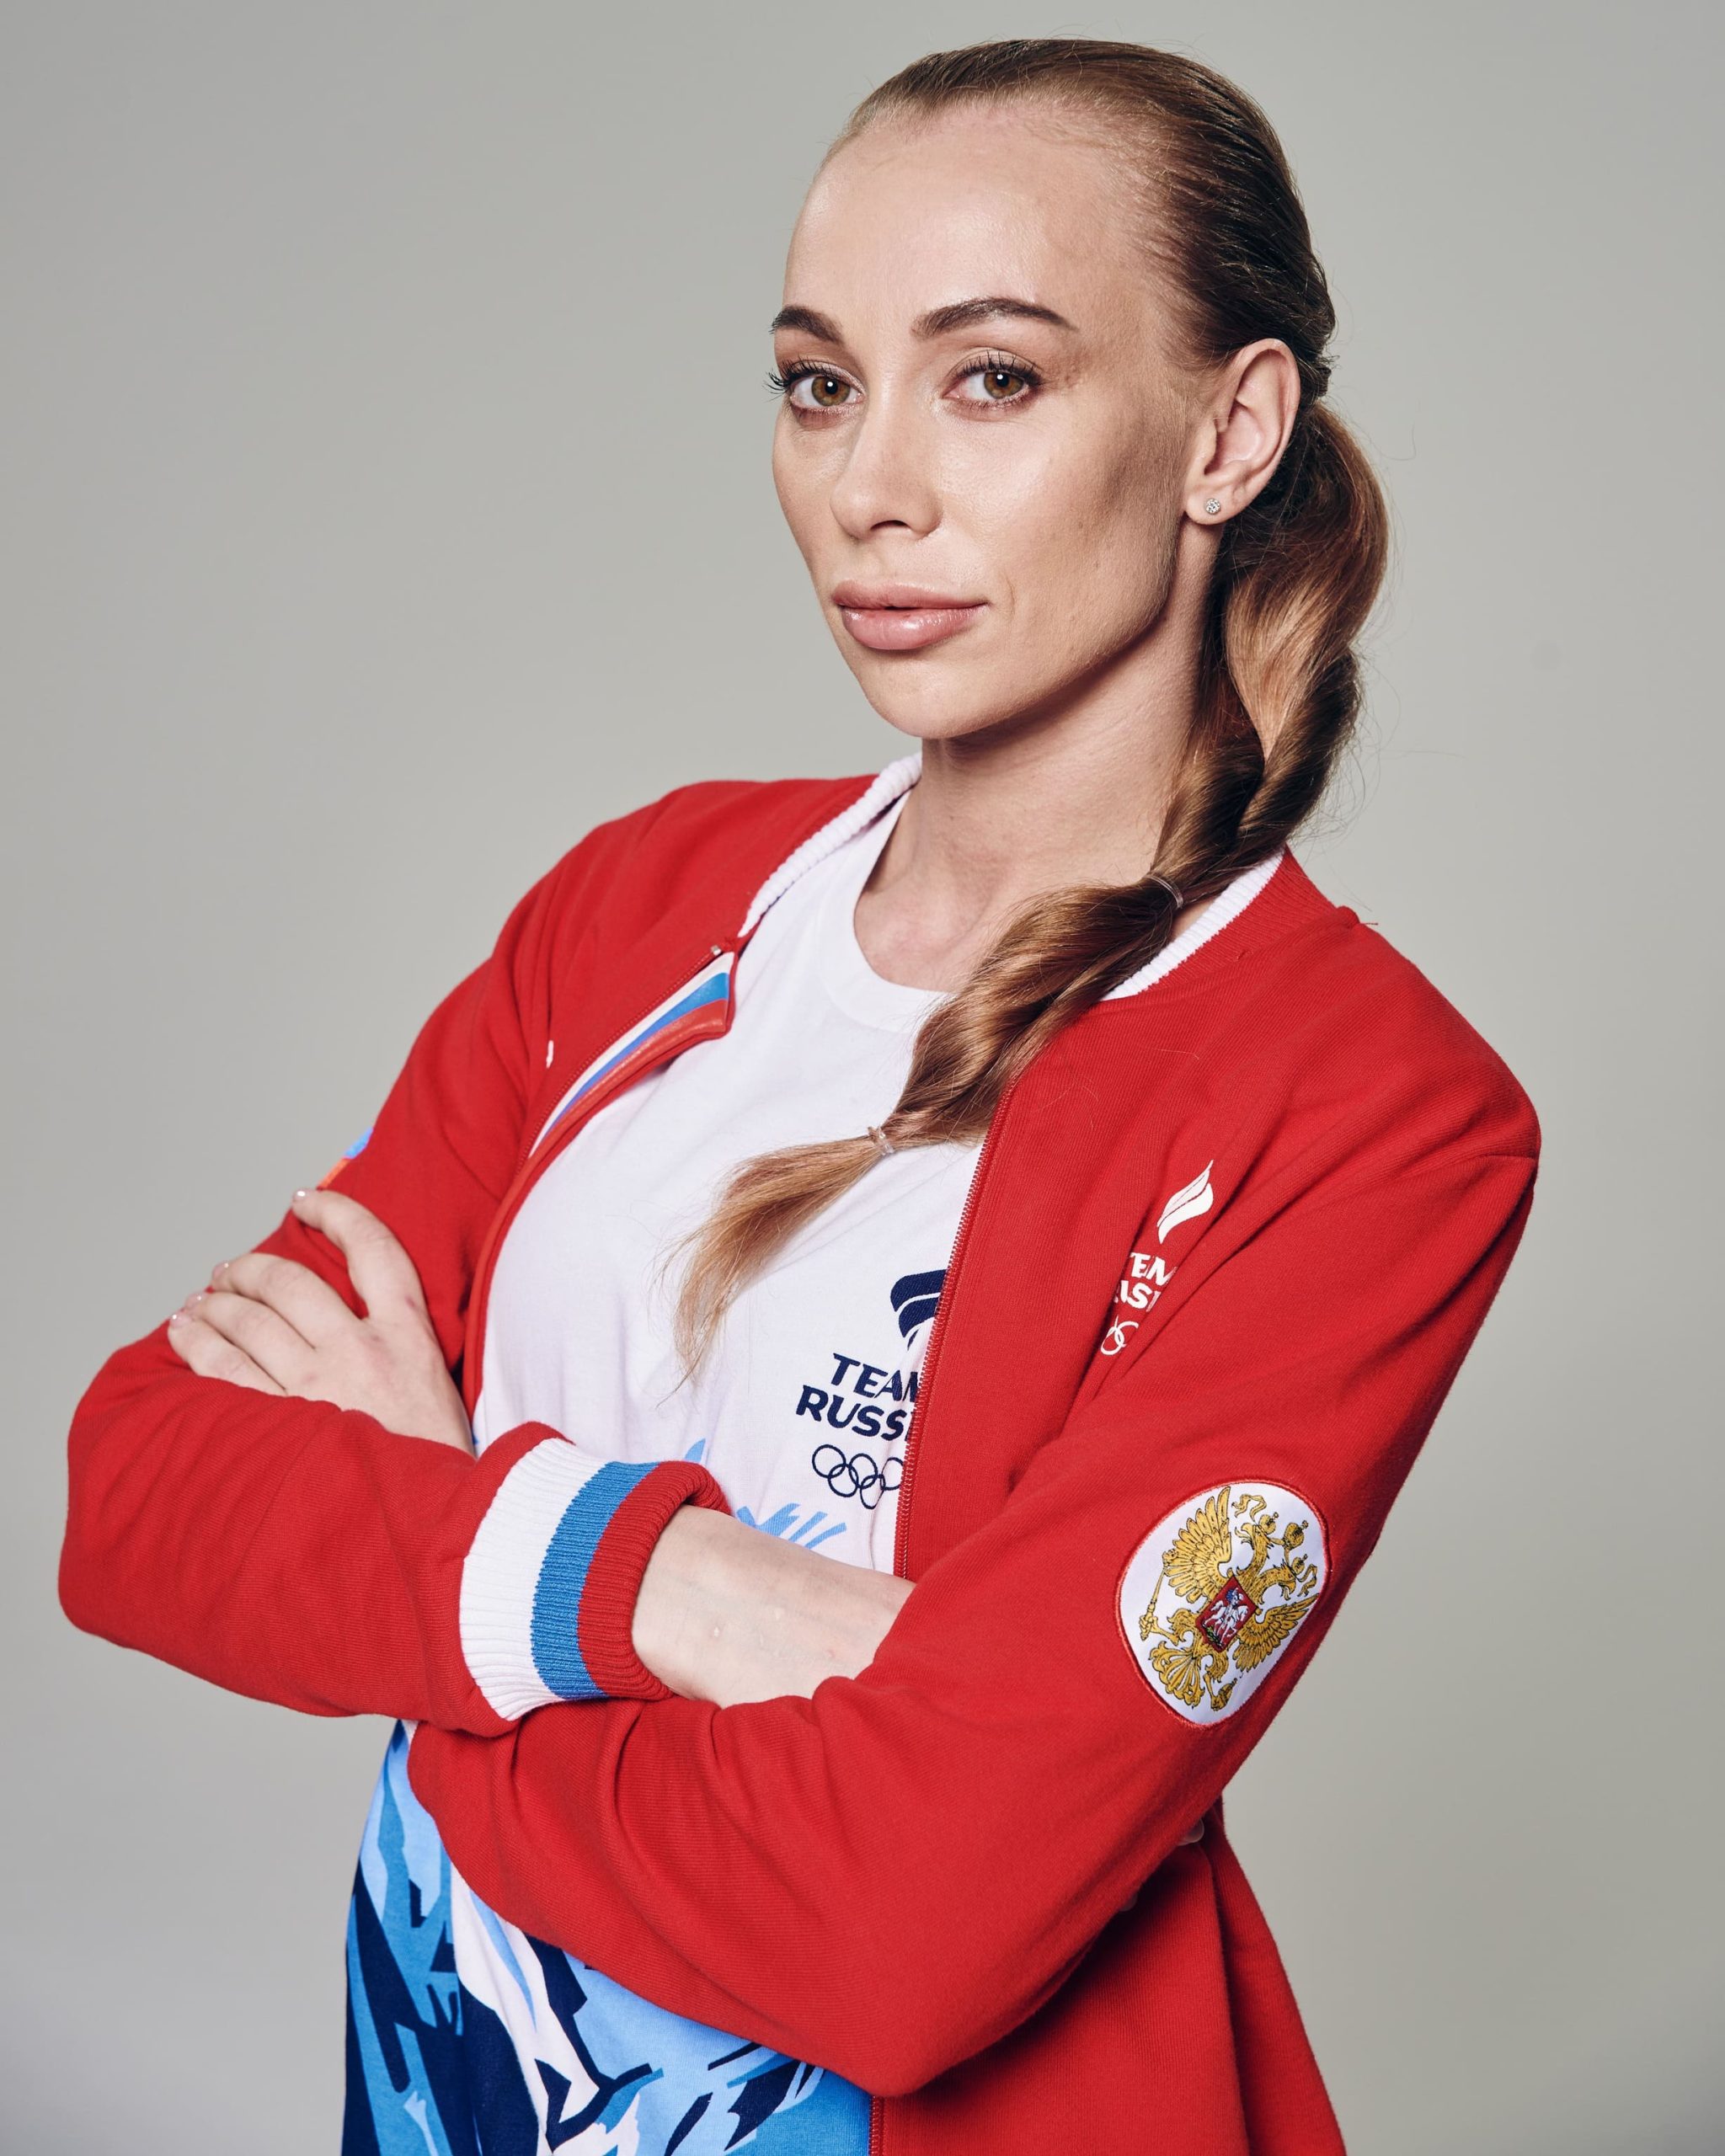 Олимпийская чемпионка по художественной гимнастике Анастасия Максимова стала амбассадором Российского экологического общества